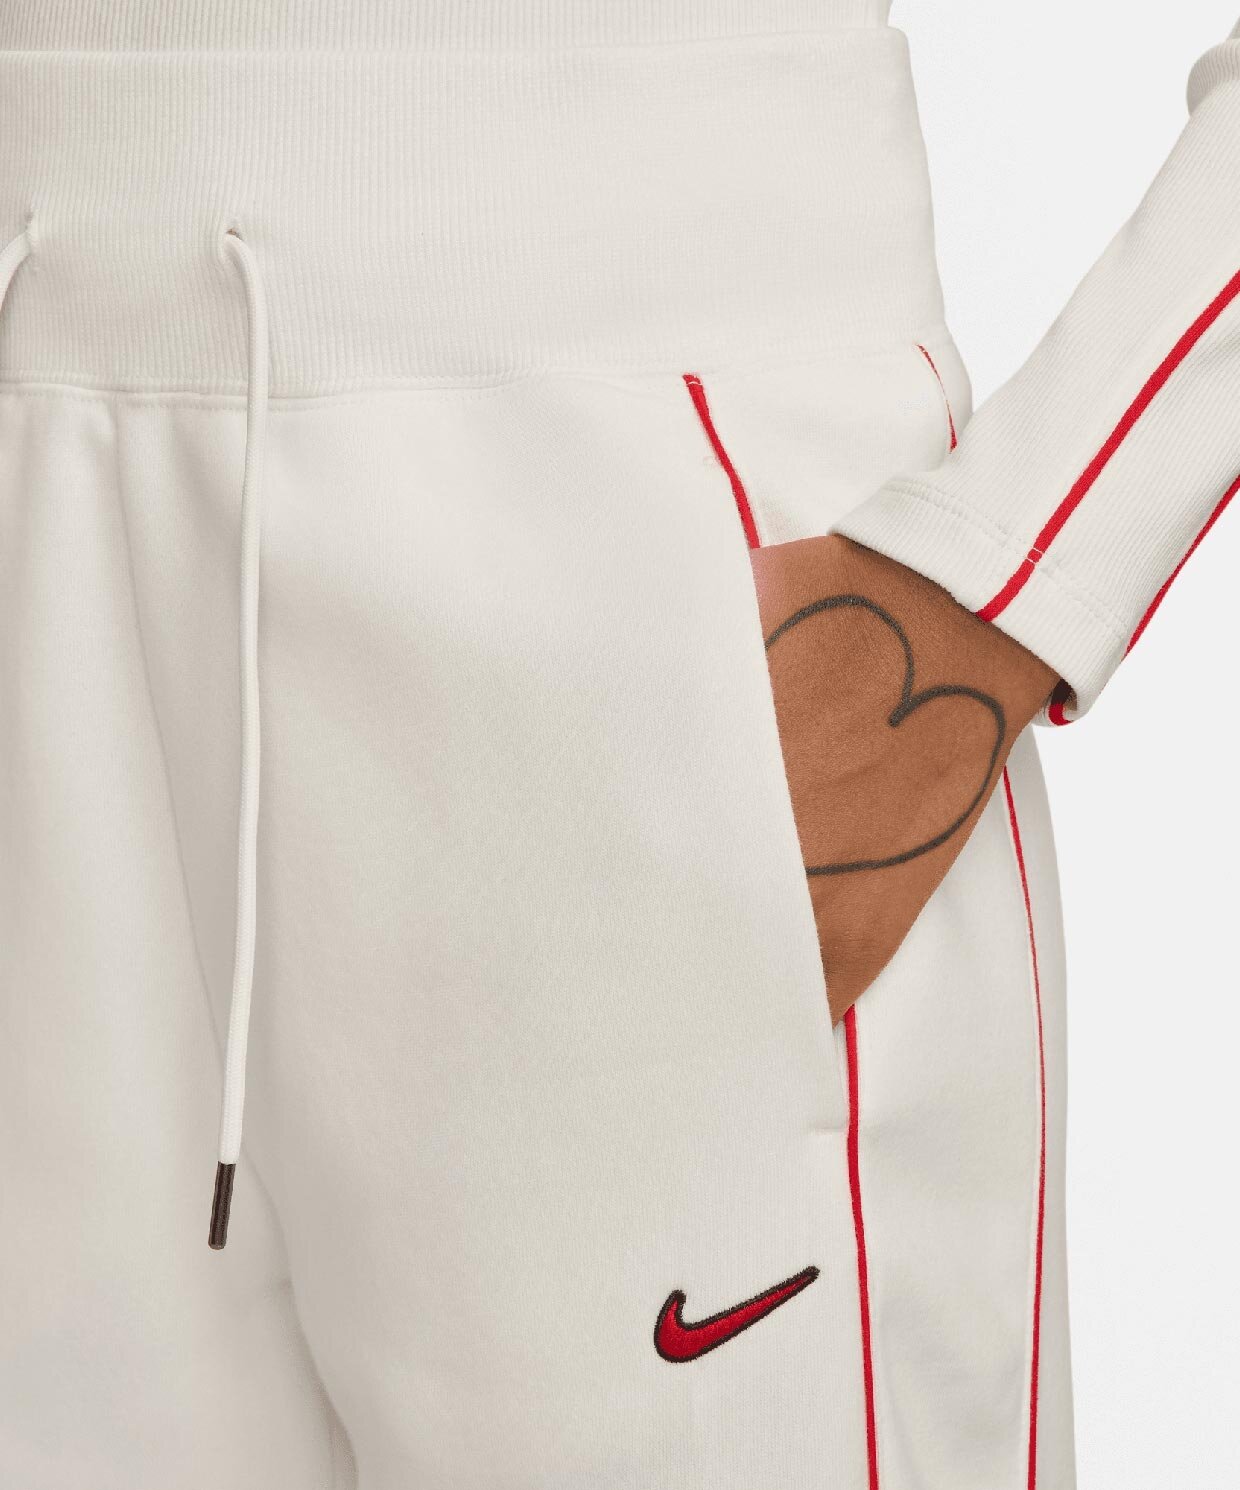 resm Nike Sportswear Phoenix Fleece Pant